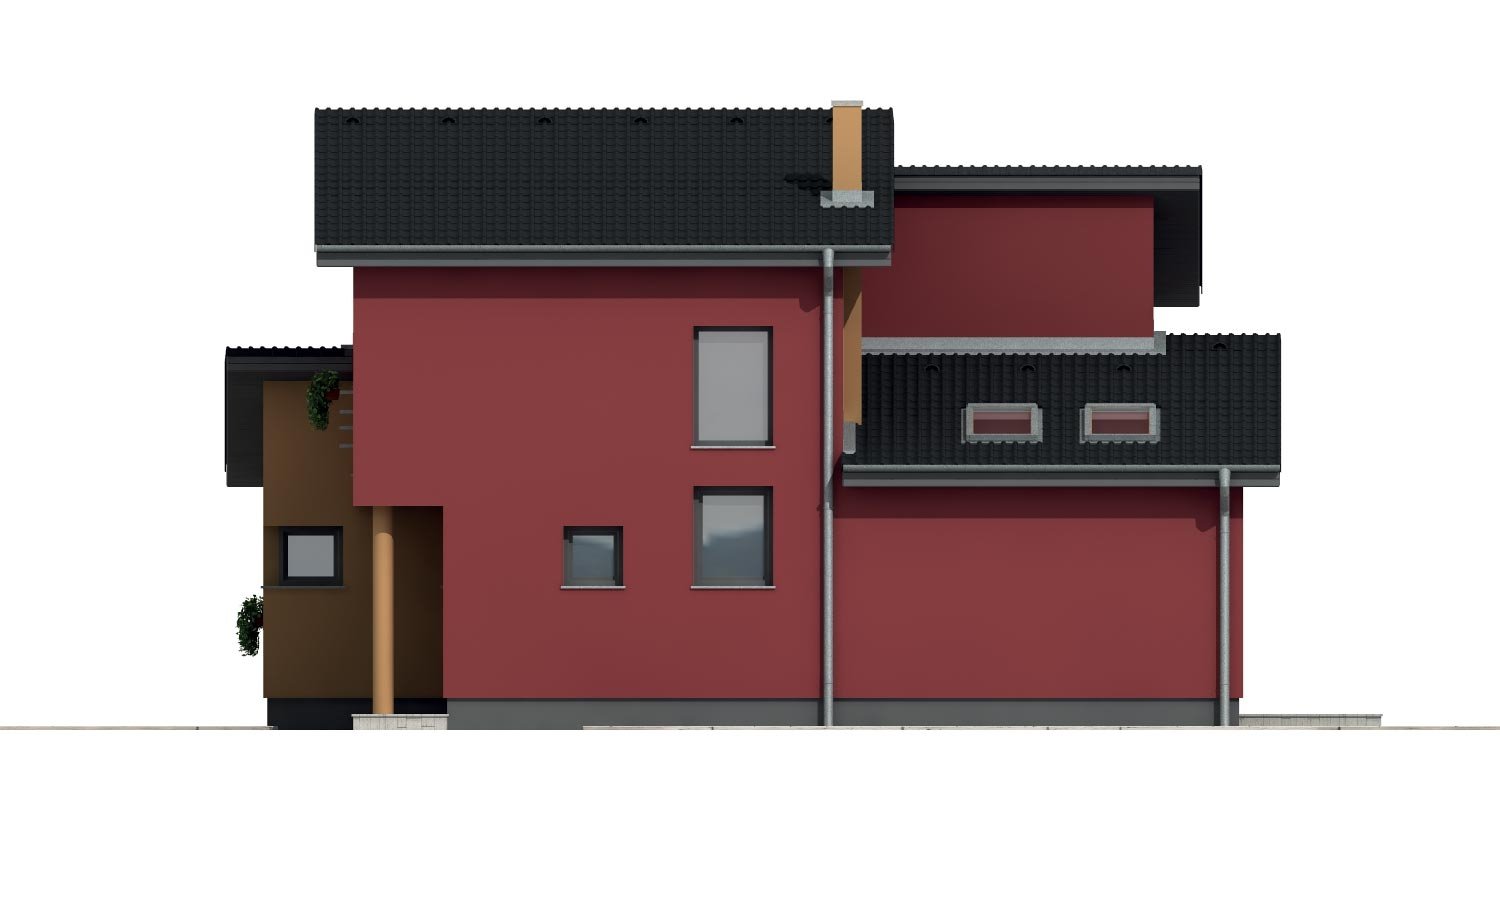 Pohľad 4. - Moderní poschoďový dům s pokojem v přízemí a pultovými střechami.